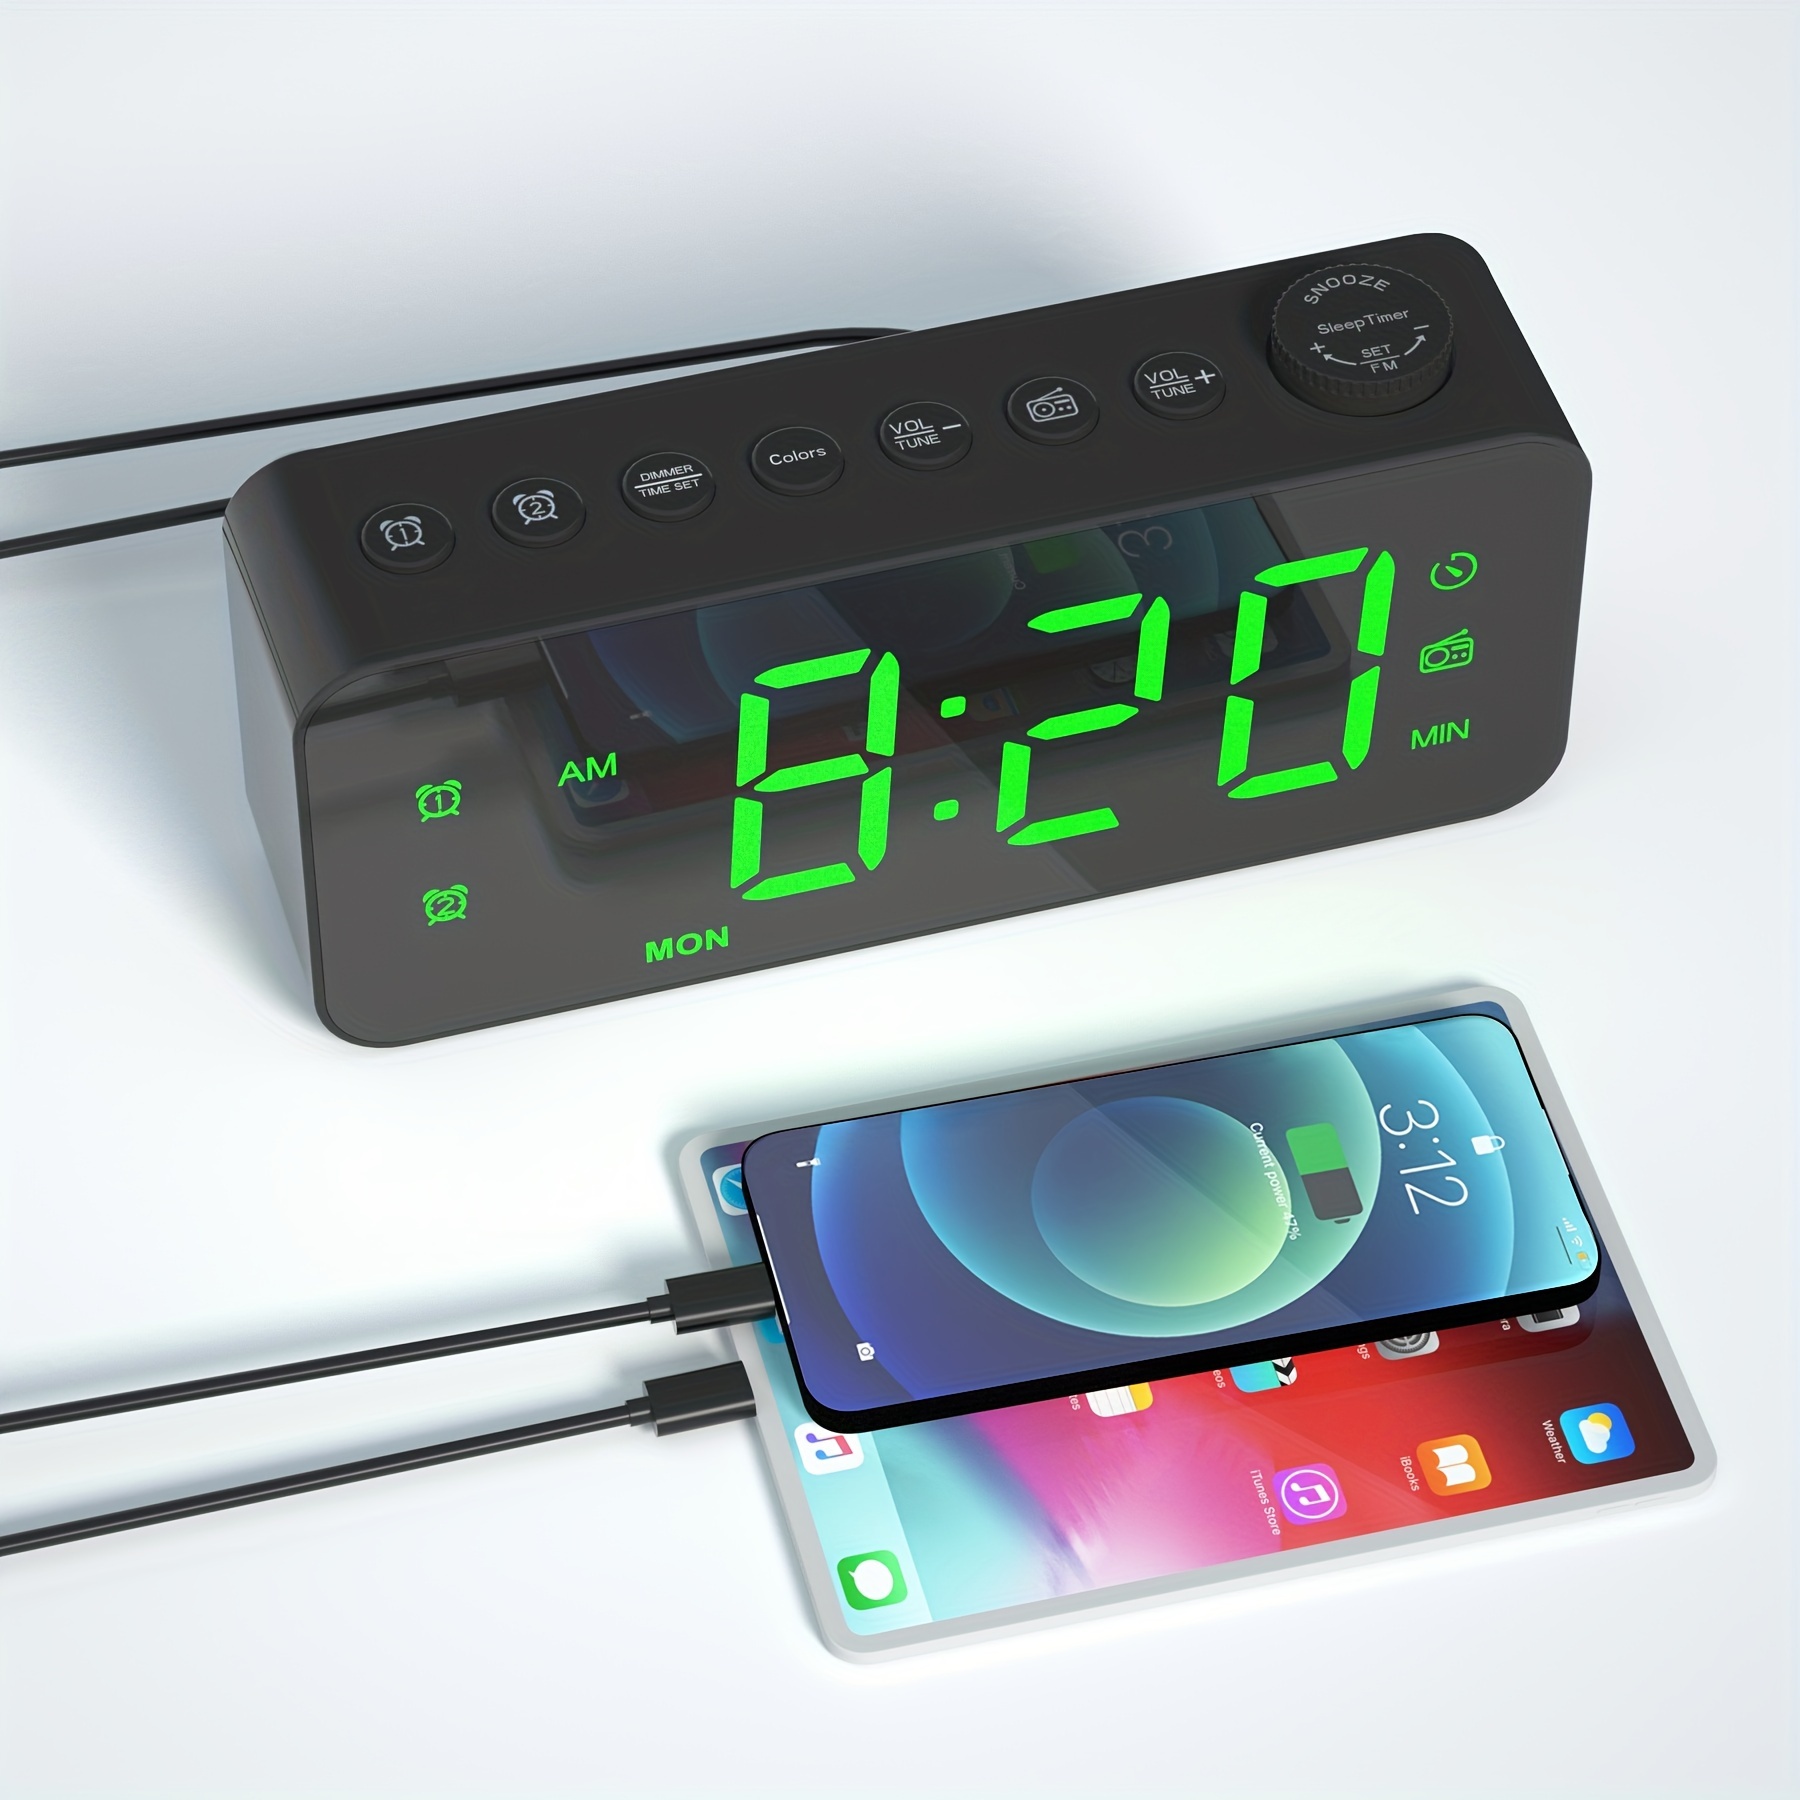 Radio despertador de proyección de techo, reloj despertador fm con proyector  de techo, pantalla de temperatura, relojes despertadores de puerto de carga  USB dual, dial negro